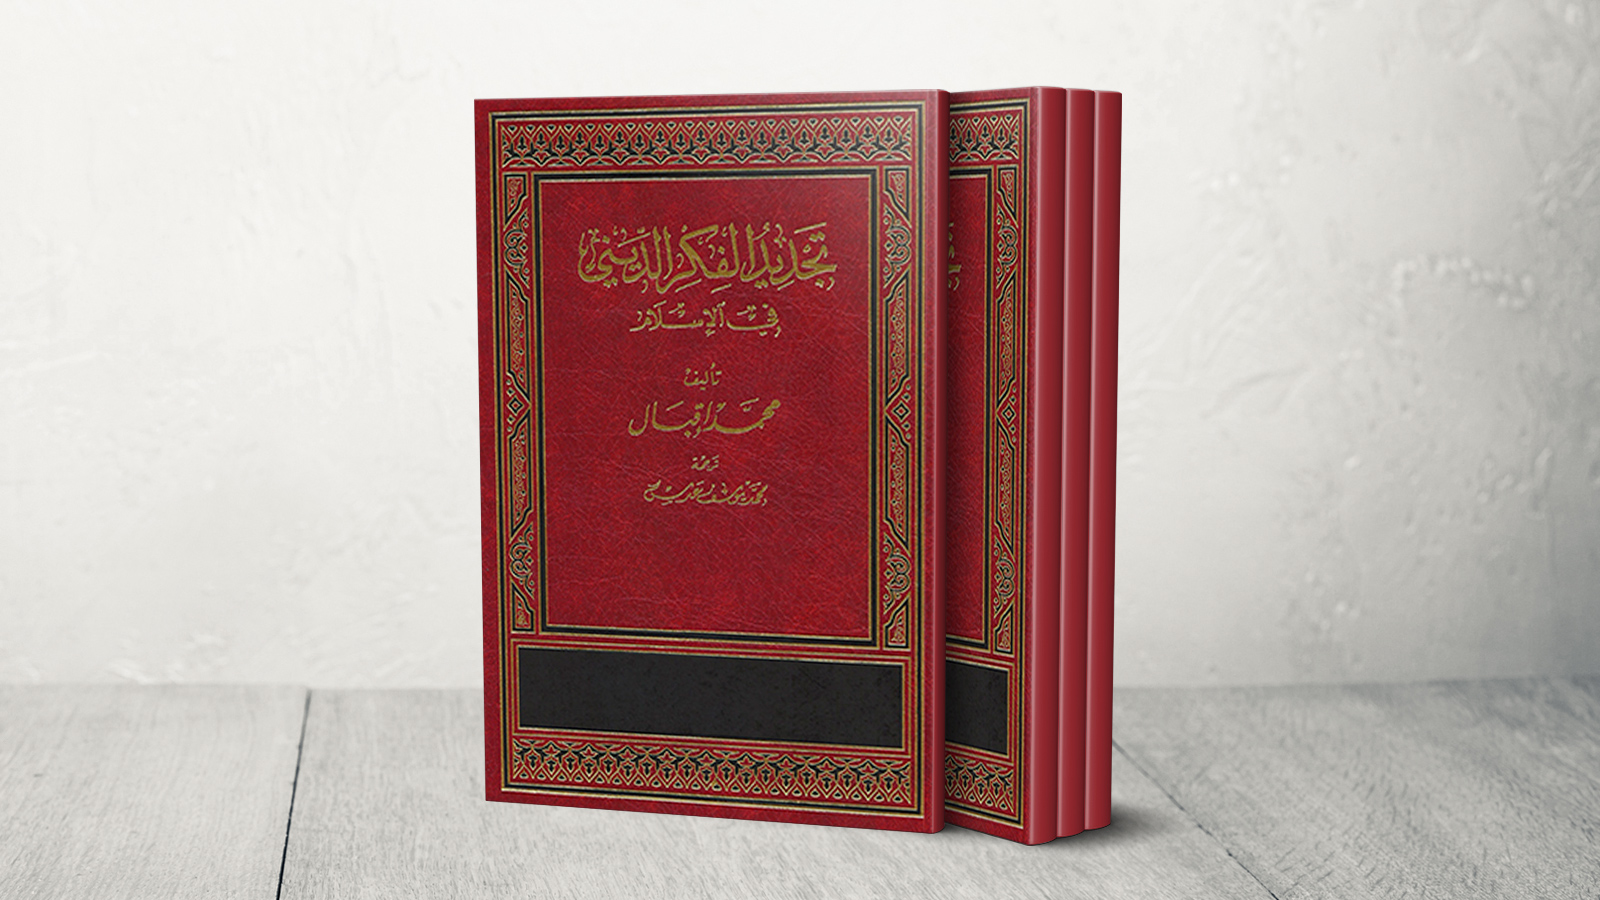 العلامة محمد إقبال لديه عدة كتب حول مفهوم تجديد وإعادة بناء الفكر الديني (الجزيرة)